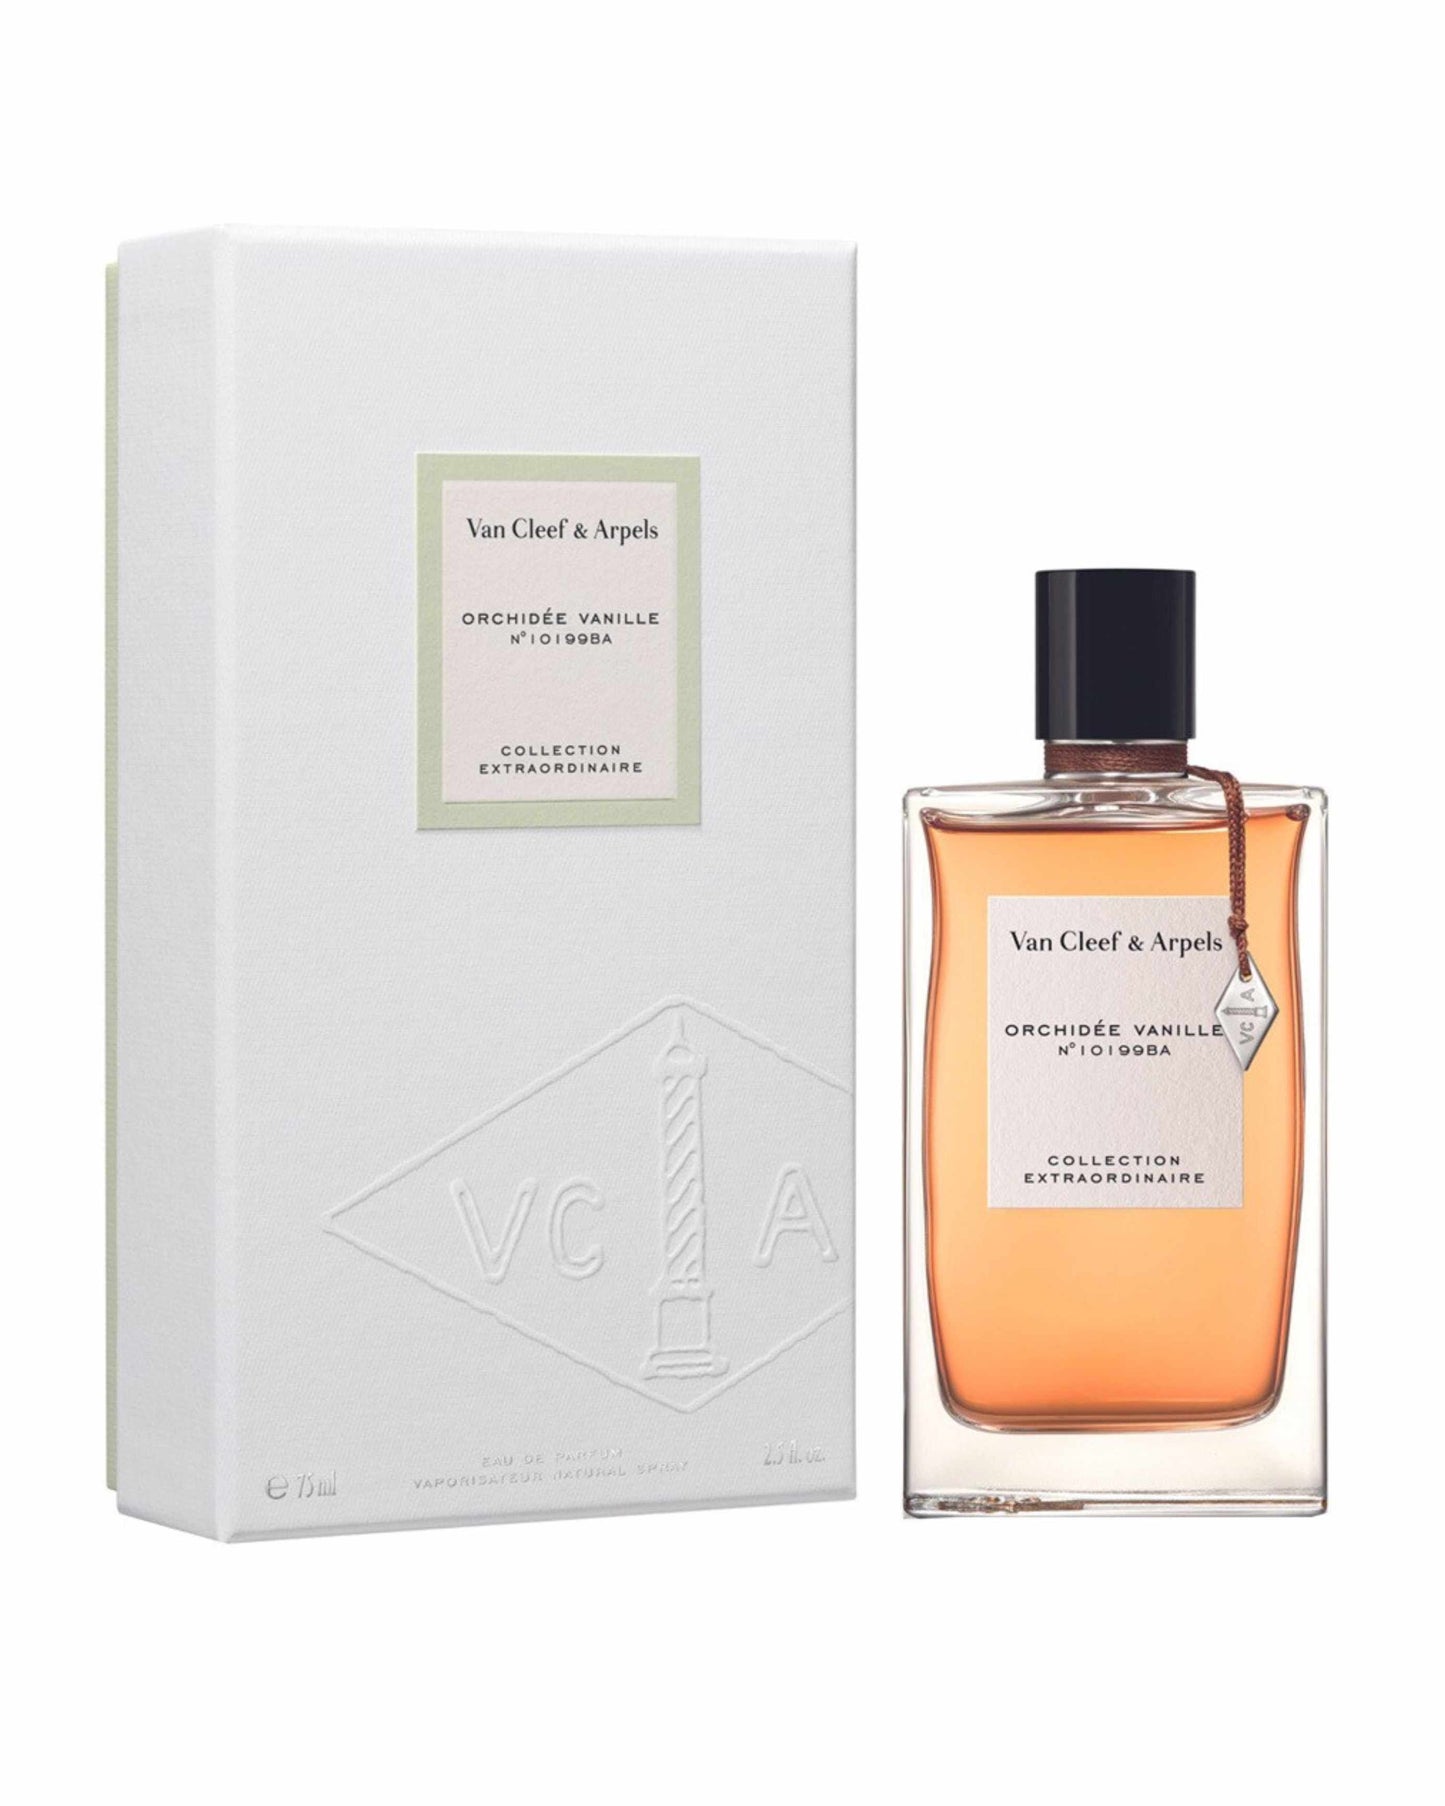 VAN CLEEF & ARPELS – ORCHIDEE VANILLE–foryou–prix de foryou parfumurie en ligne–vente de parfum original au Maroc–prix de foryou parfum